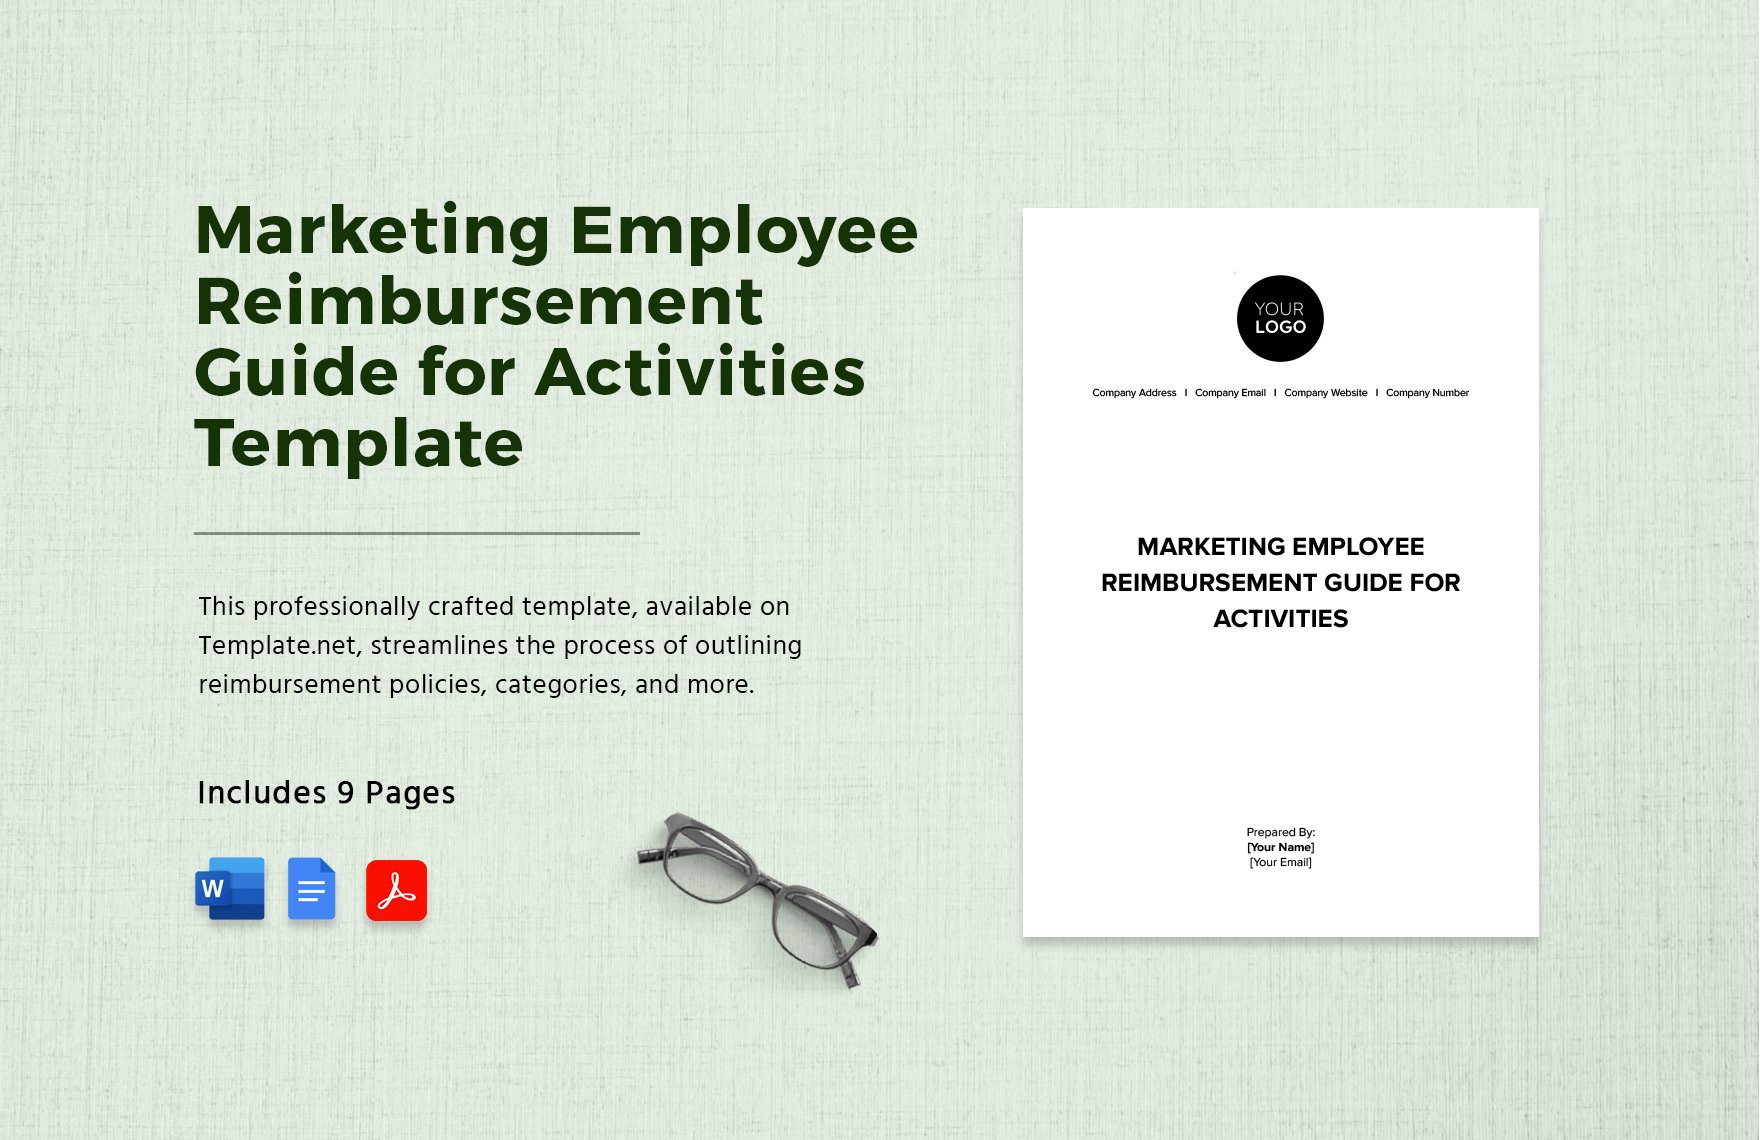 Marketing Employee Reimbursement Guide for Activities Template